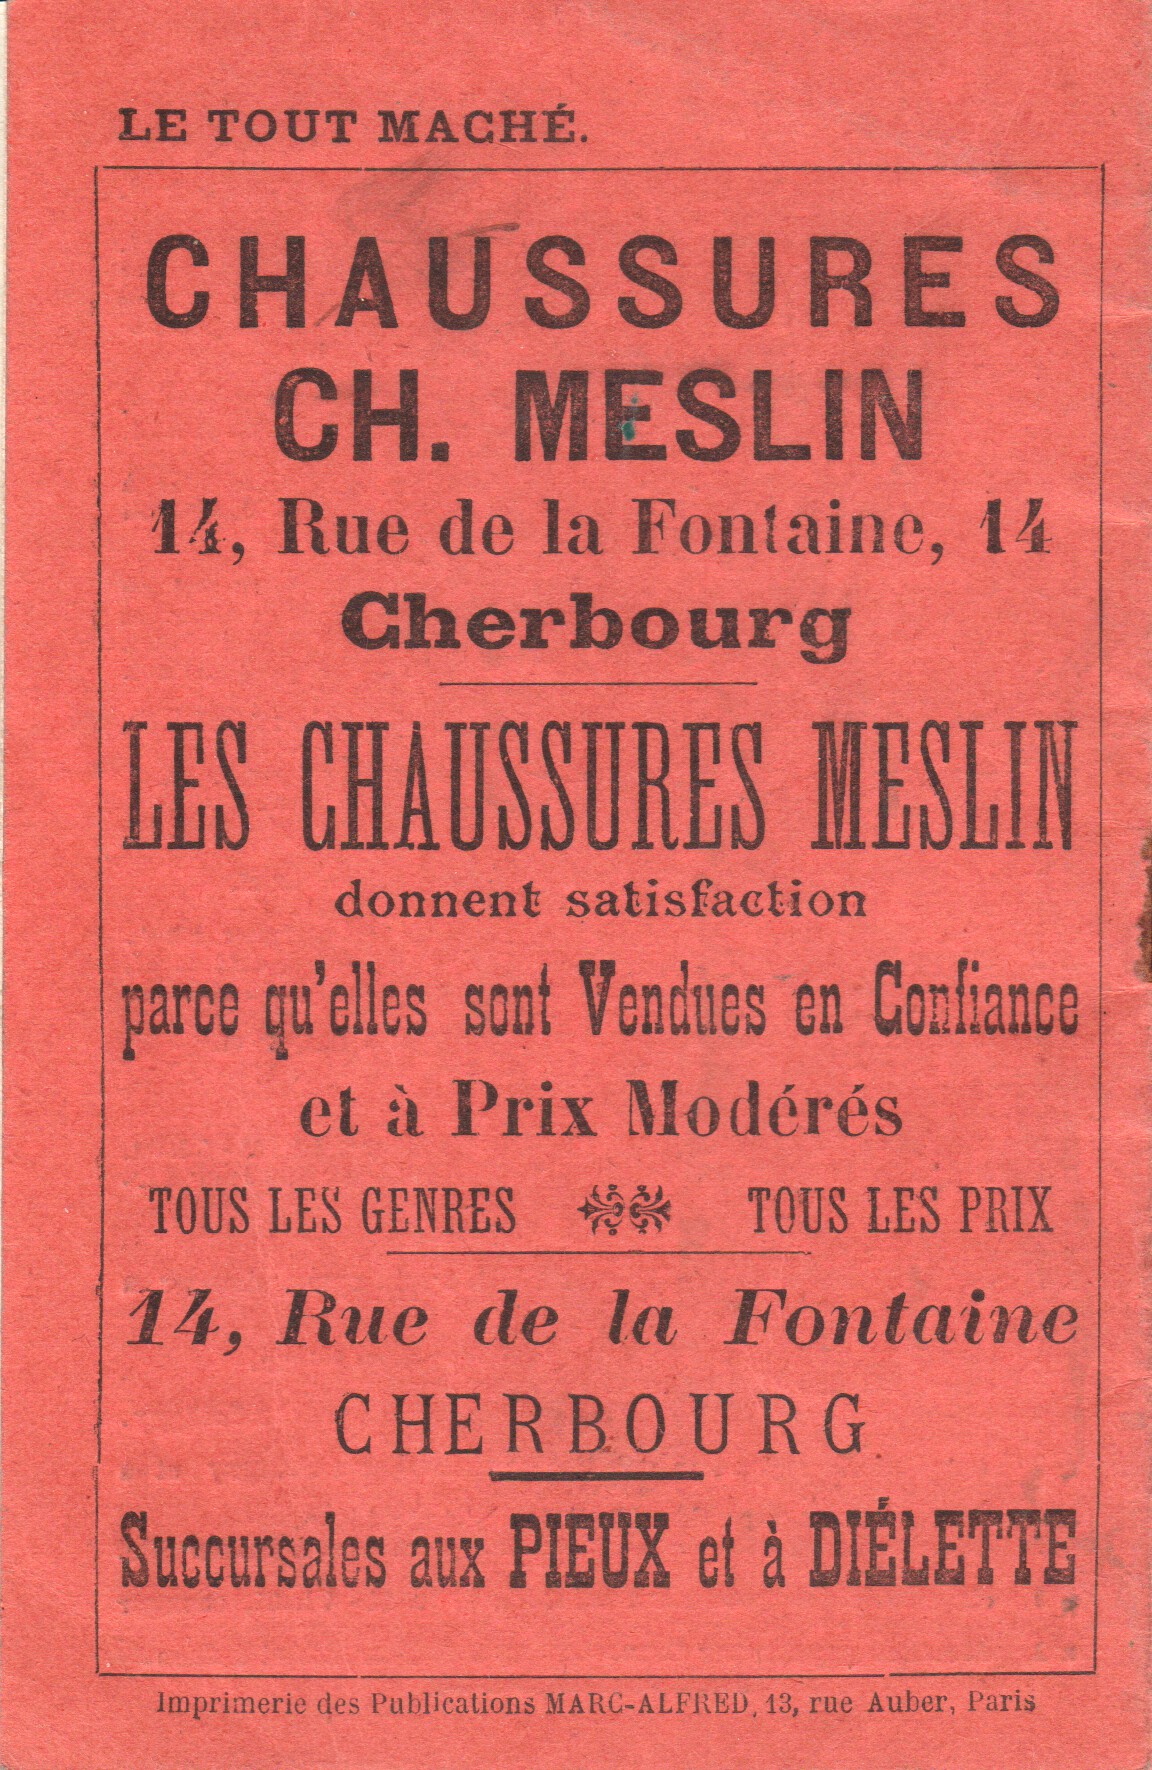 Meslin 1913 rear cover